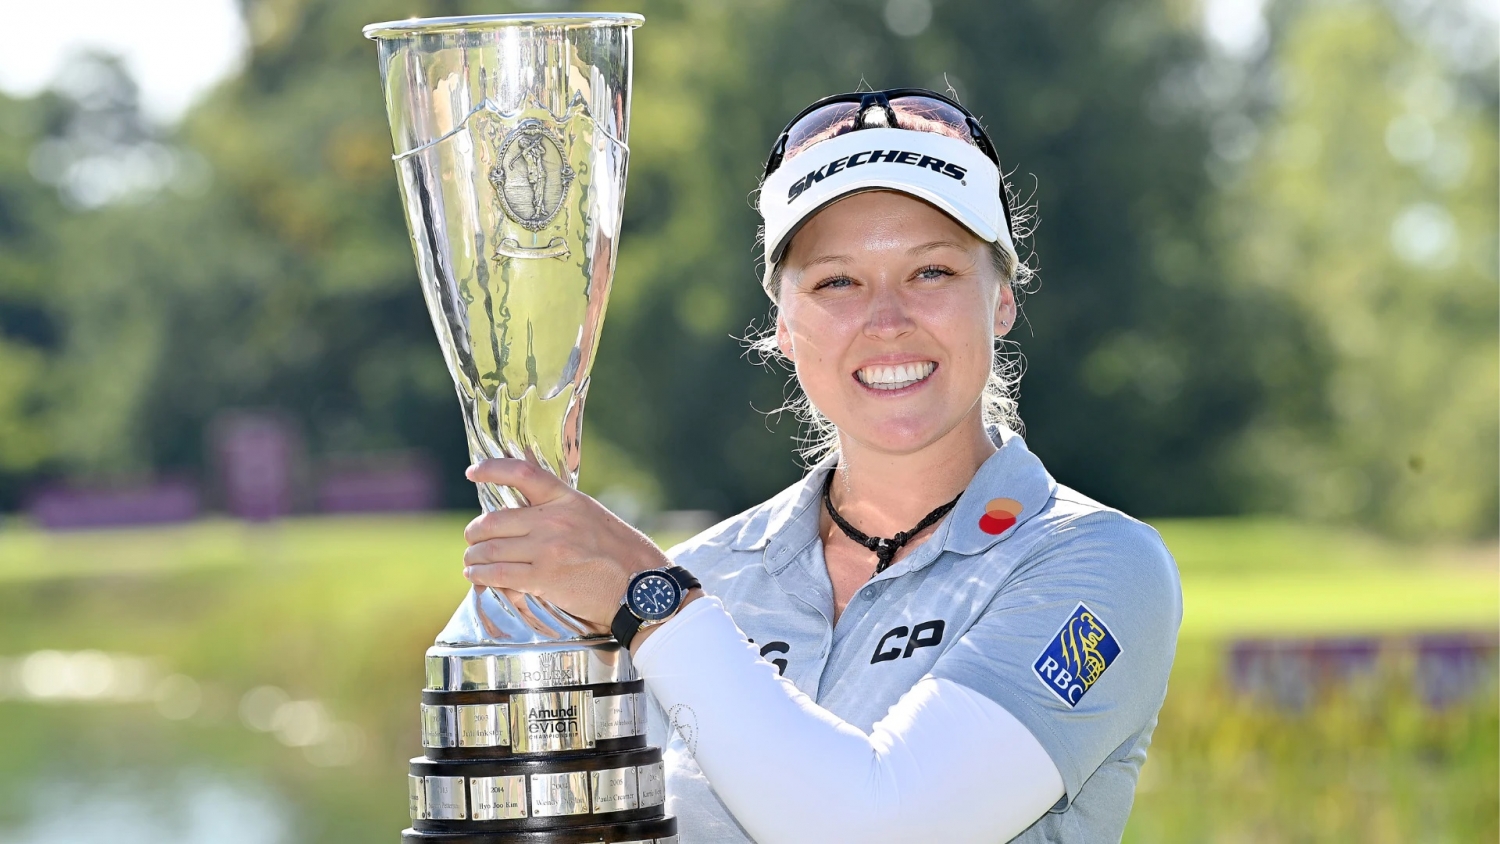 Nữ golfer Brooke Henderson vô địch Evian Championship 2022